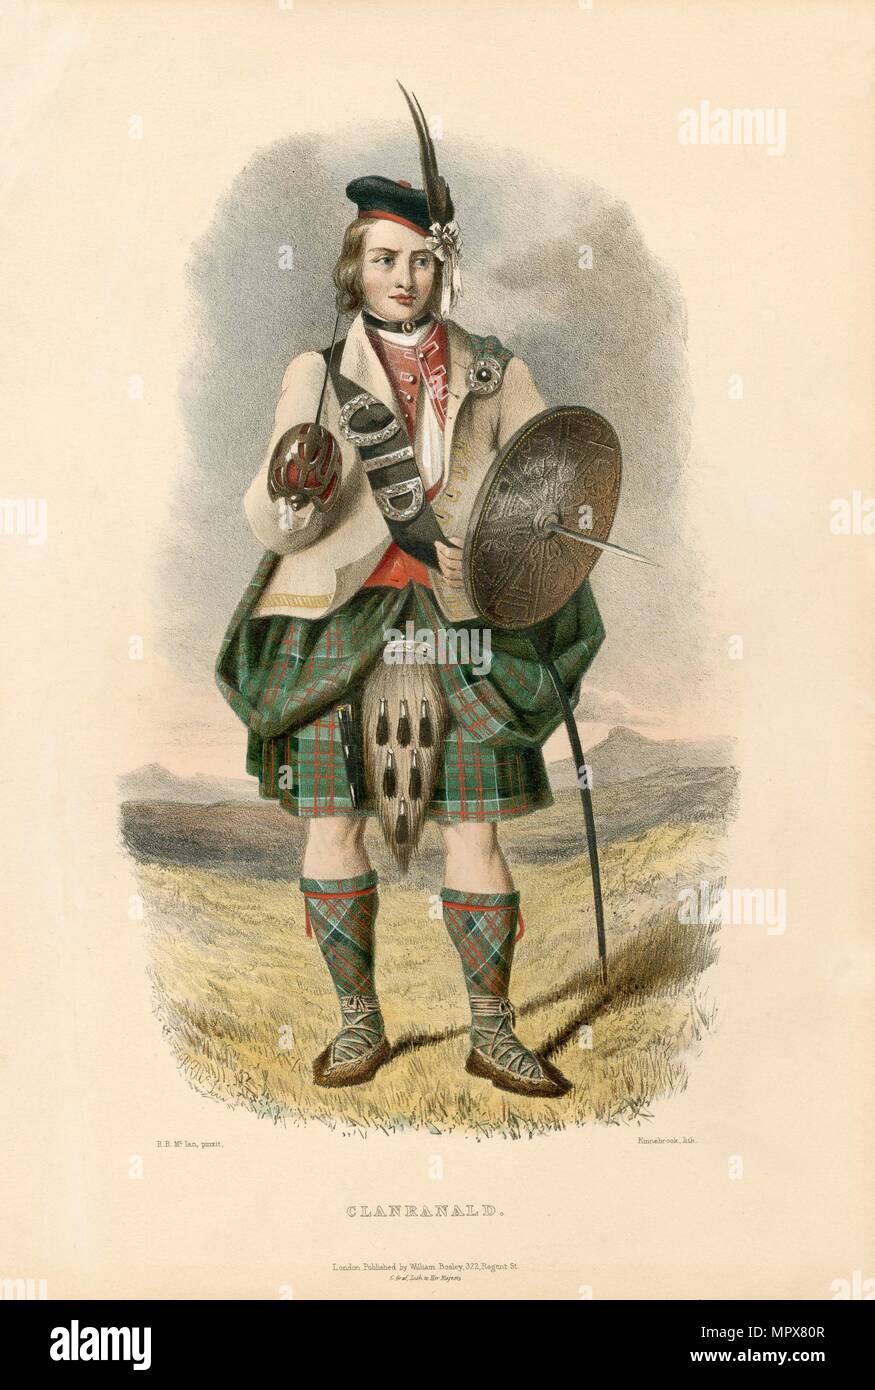 Clanranald, dal clan delle Highlands scozzesi, pub. 1845 (Litografia a colori) Foto Stock